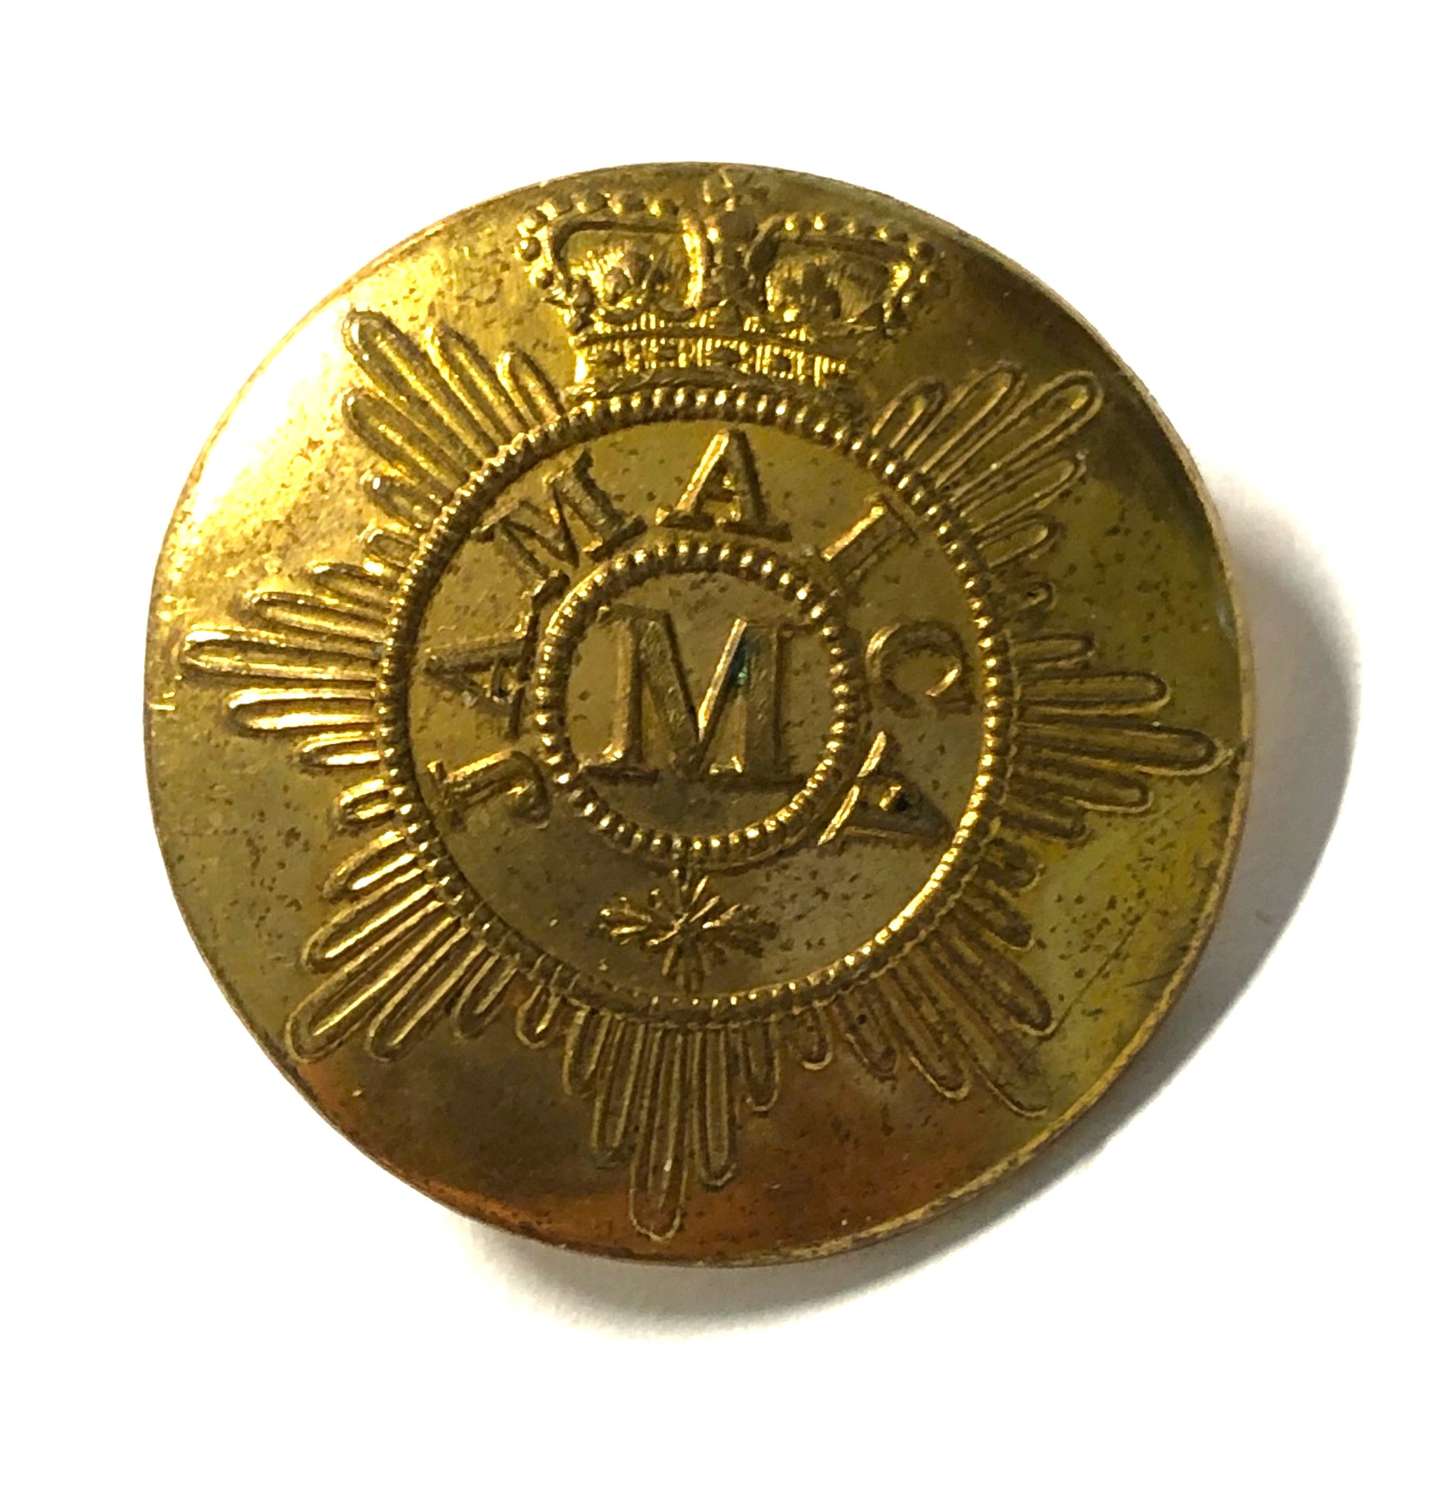 Jamaica Militia Georgian/Victorian open back gilt coatee button